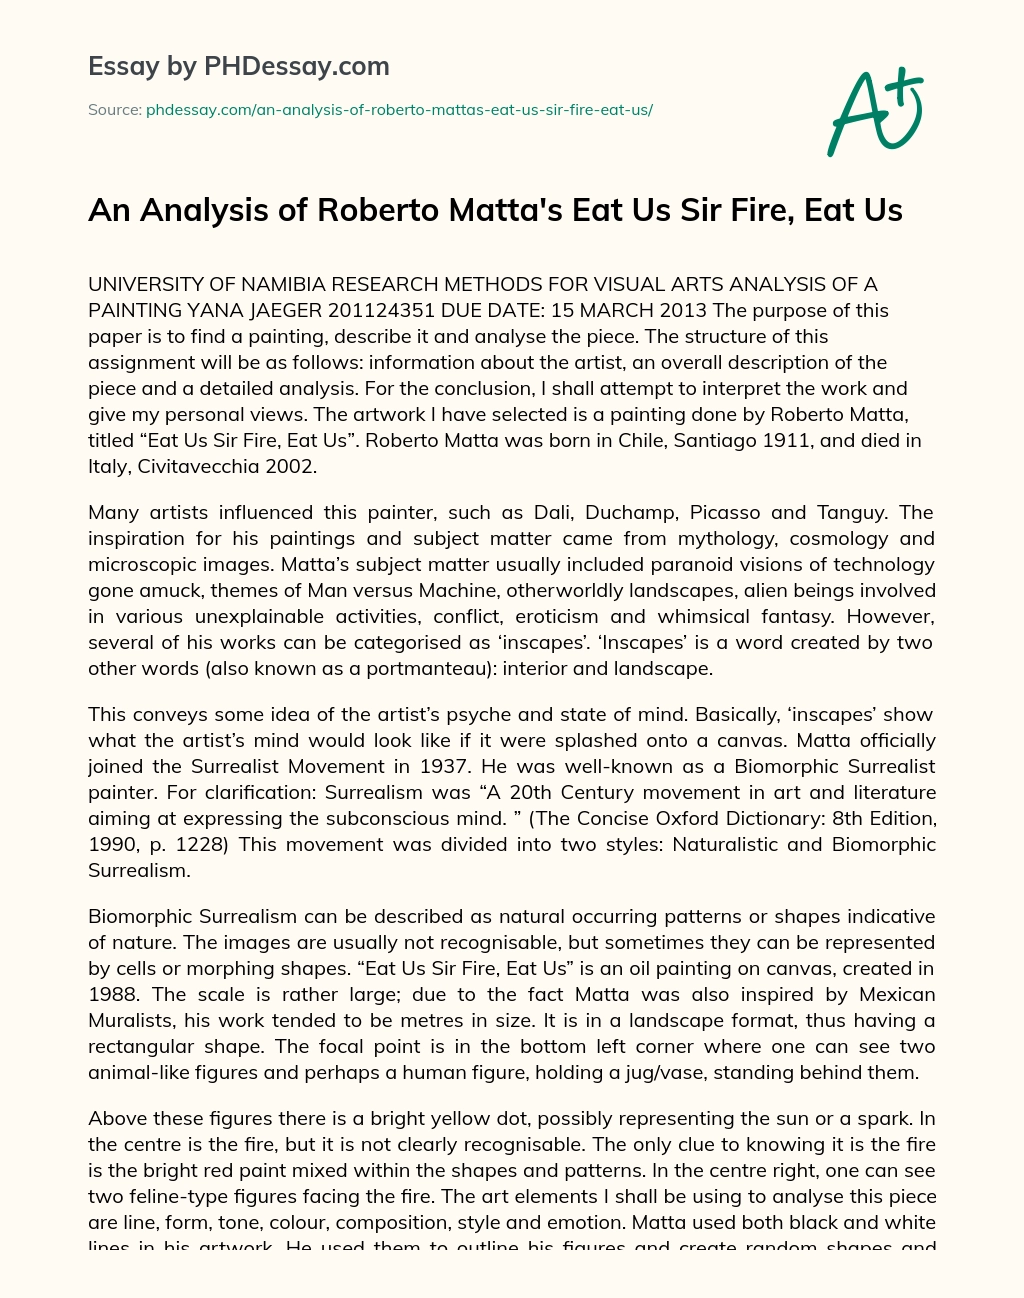 An Analysis of Roberto Matta’s Eat Us Sir Fire, Eat Us essay